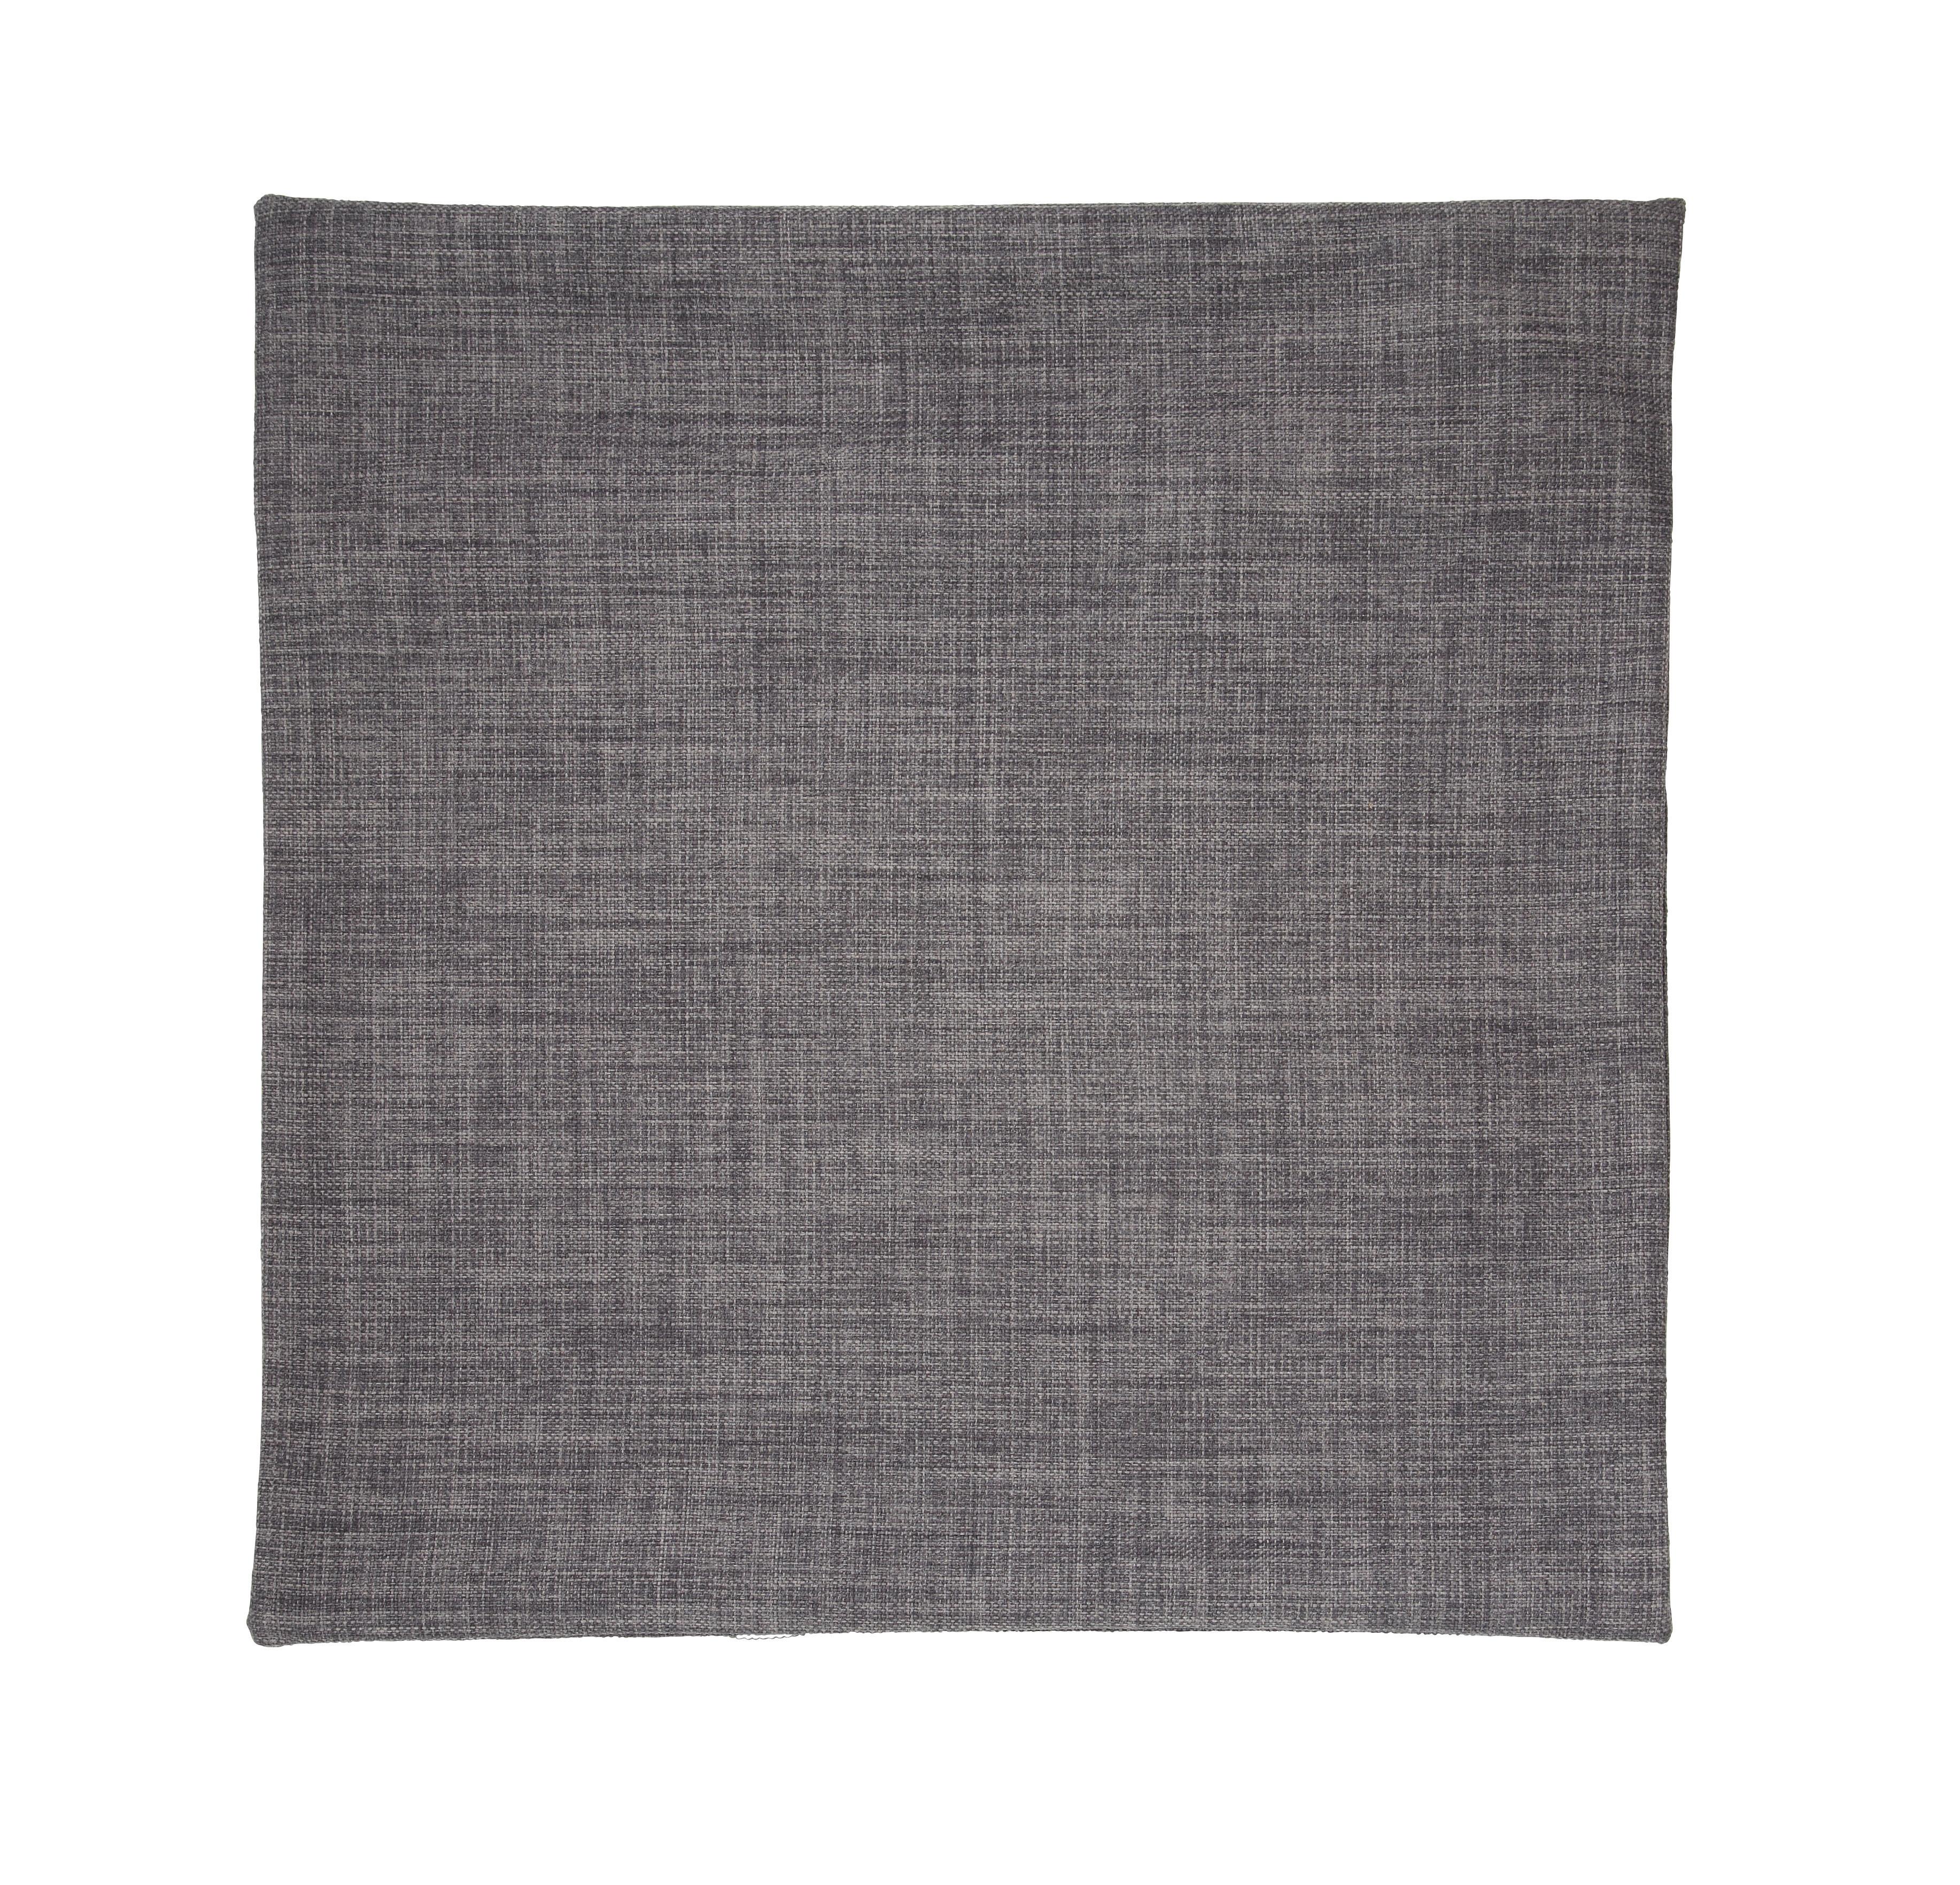 Párnahuzat Vászon 50/50 - Szürke, konvencionális, Textil (50/50cm) - Modern Living